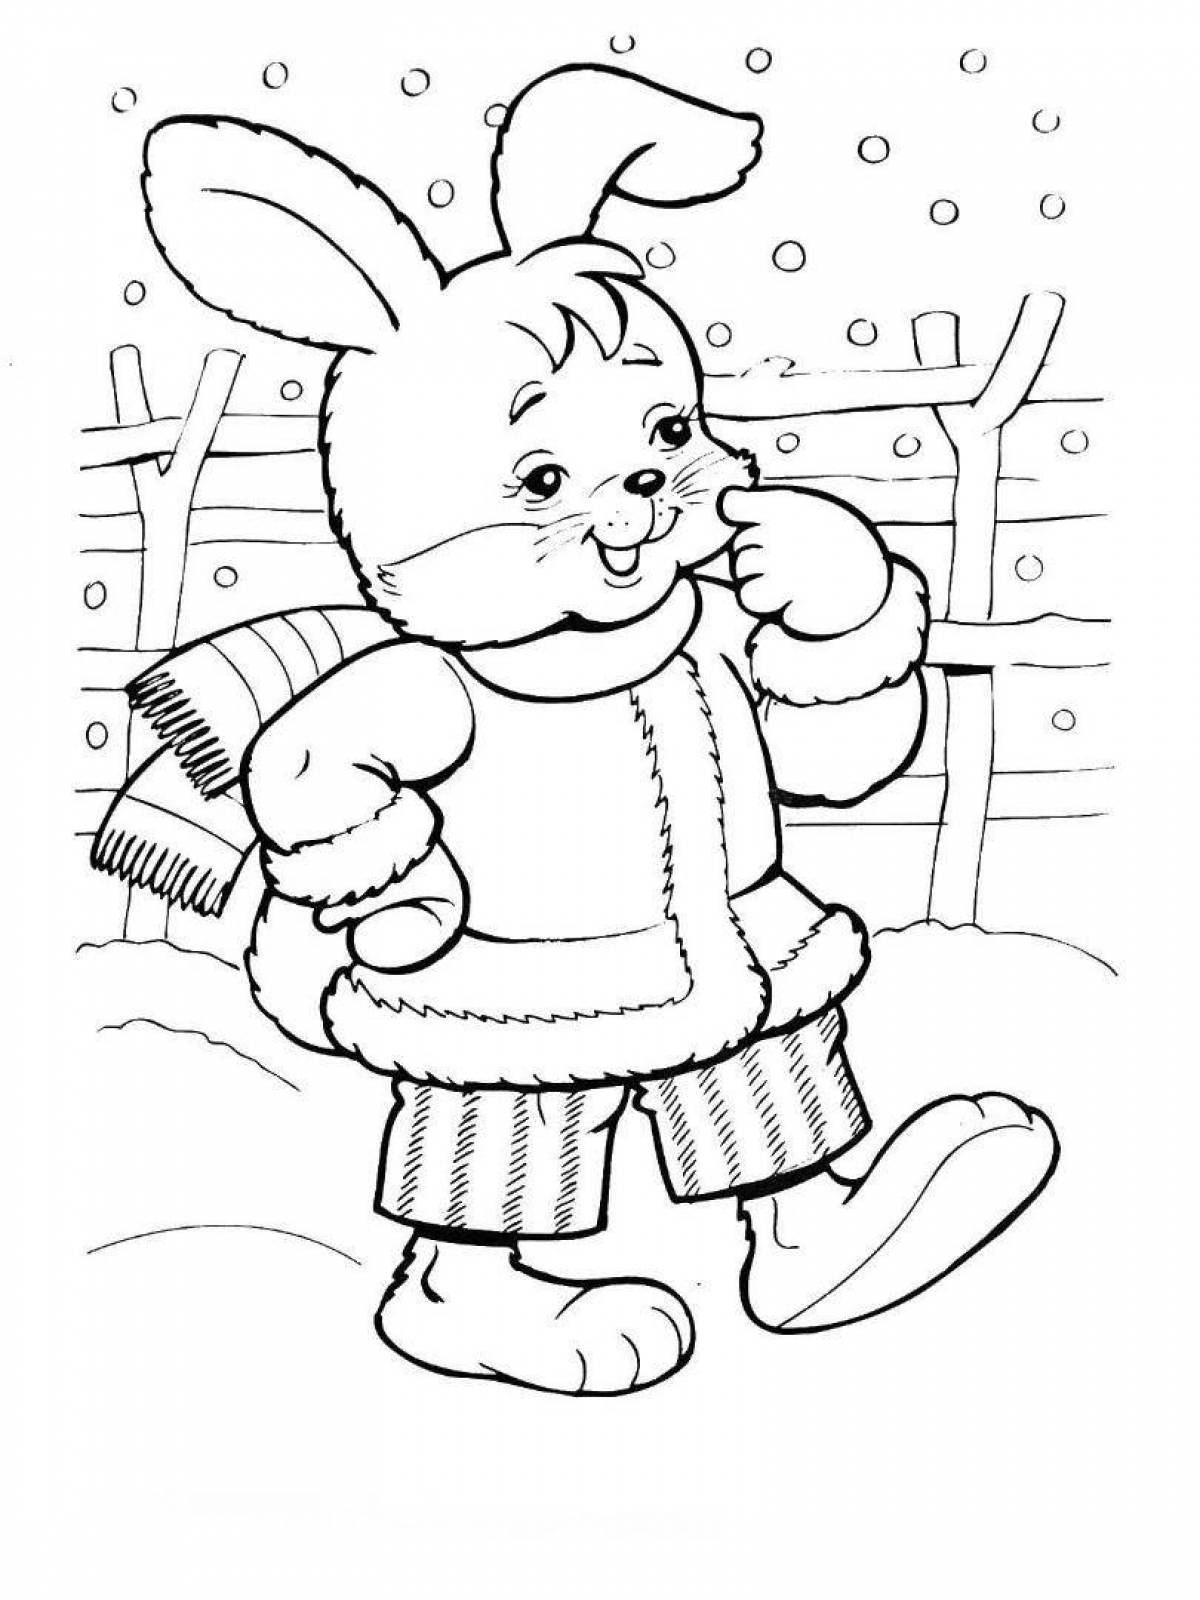 Cozy winter rabbit coloring book